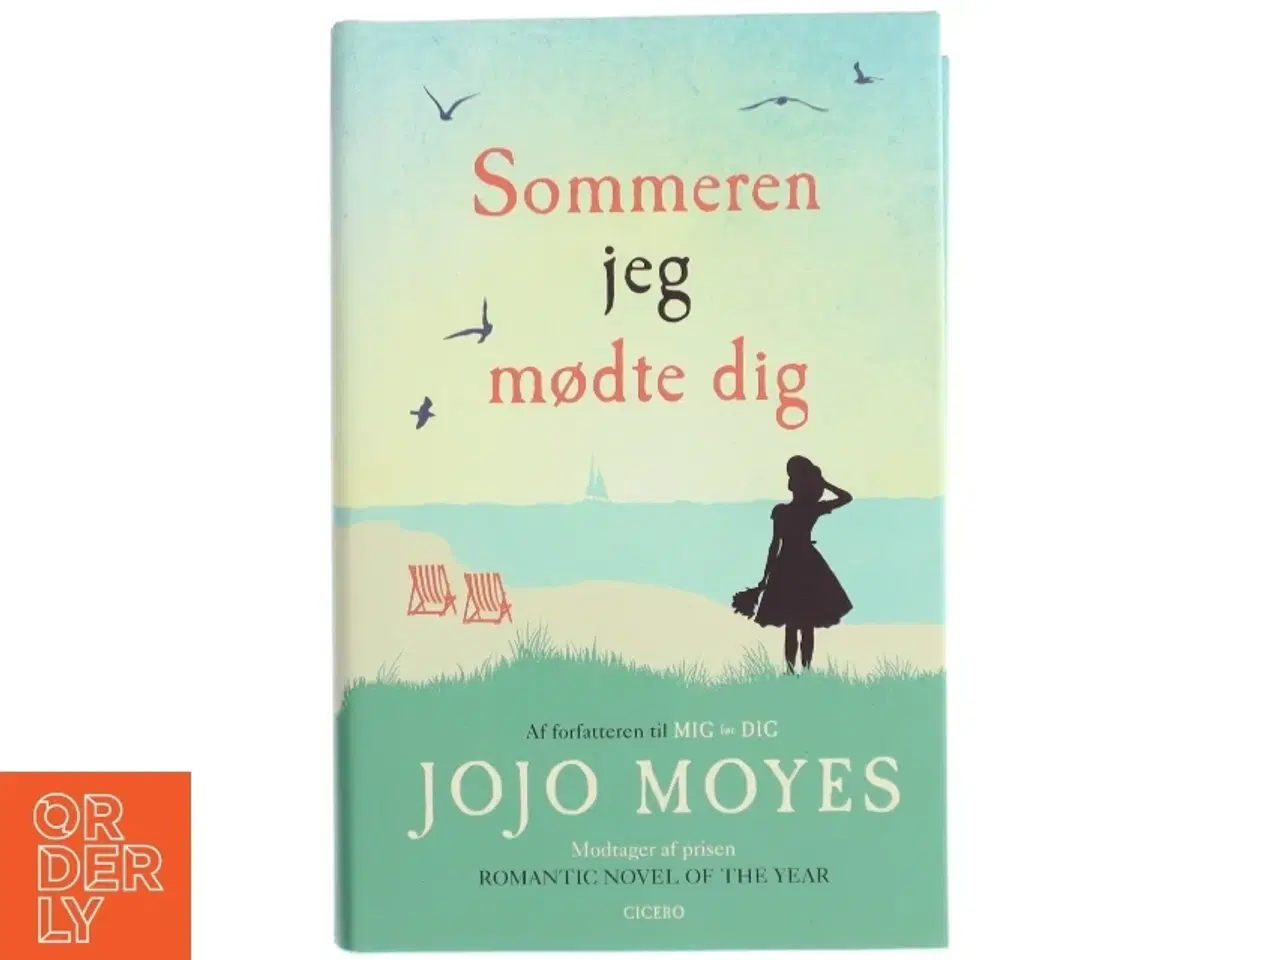 Billede 1 - 'Sommeren jeg mødte dig' af Jojo Moyes (bog)